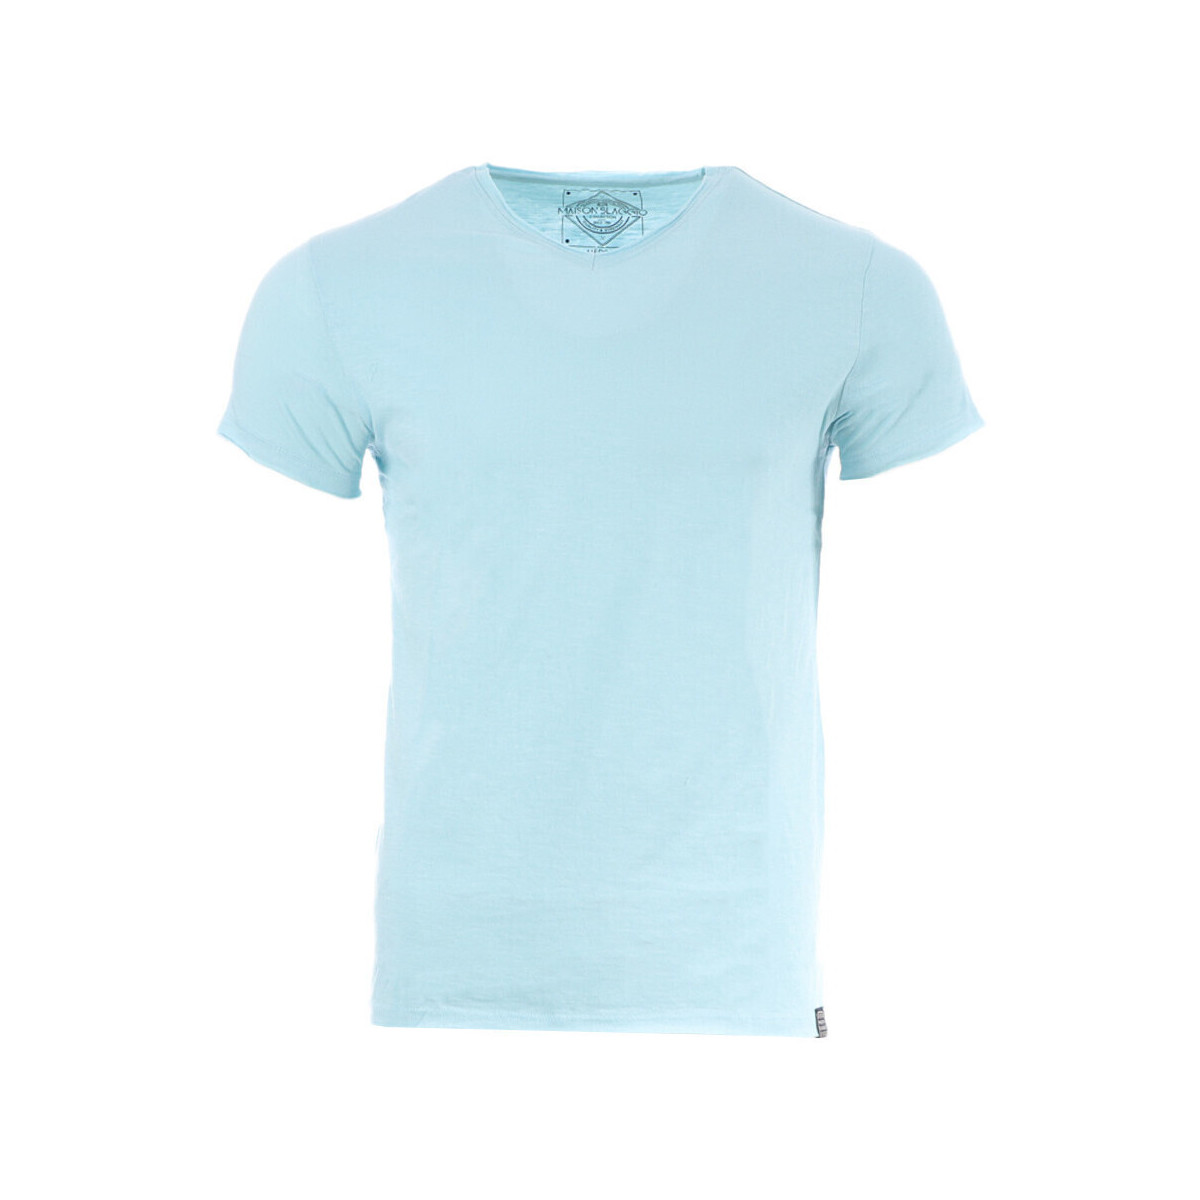 Vêtements Homme T-shirts manches courtes La Maison Blaggio MB-MYKE Bleu